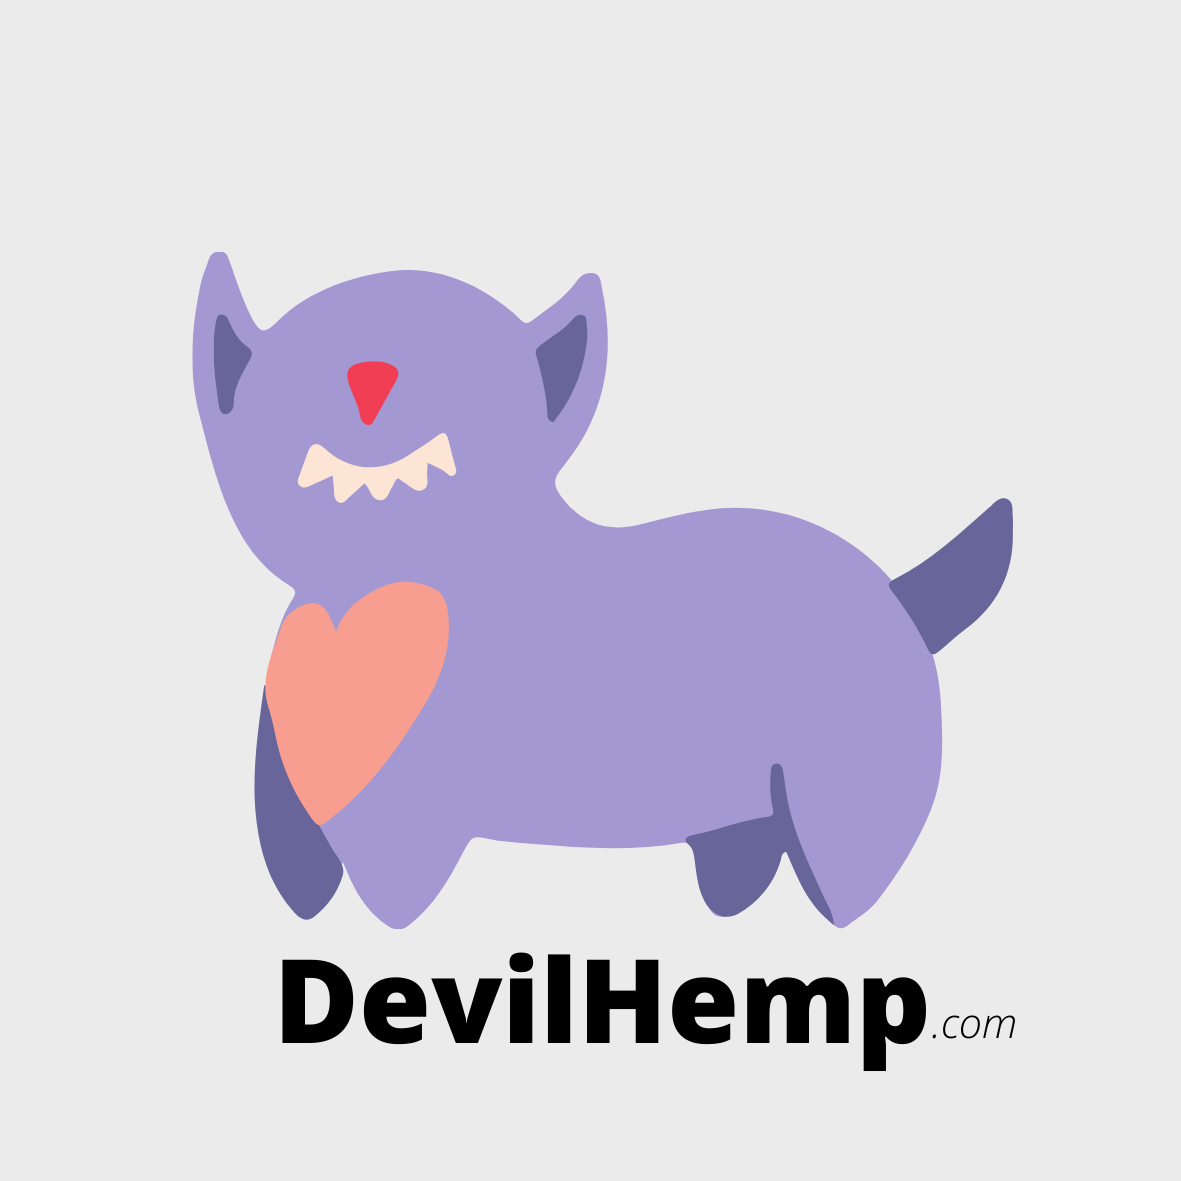 DevilHemp.png